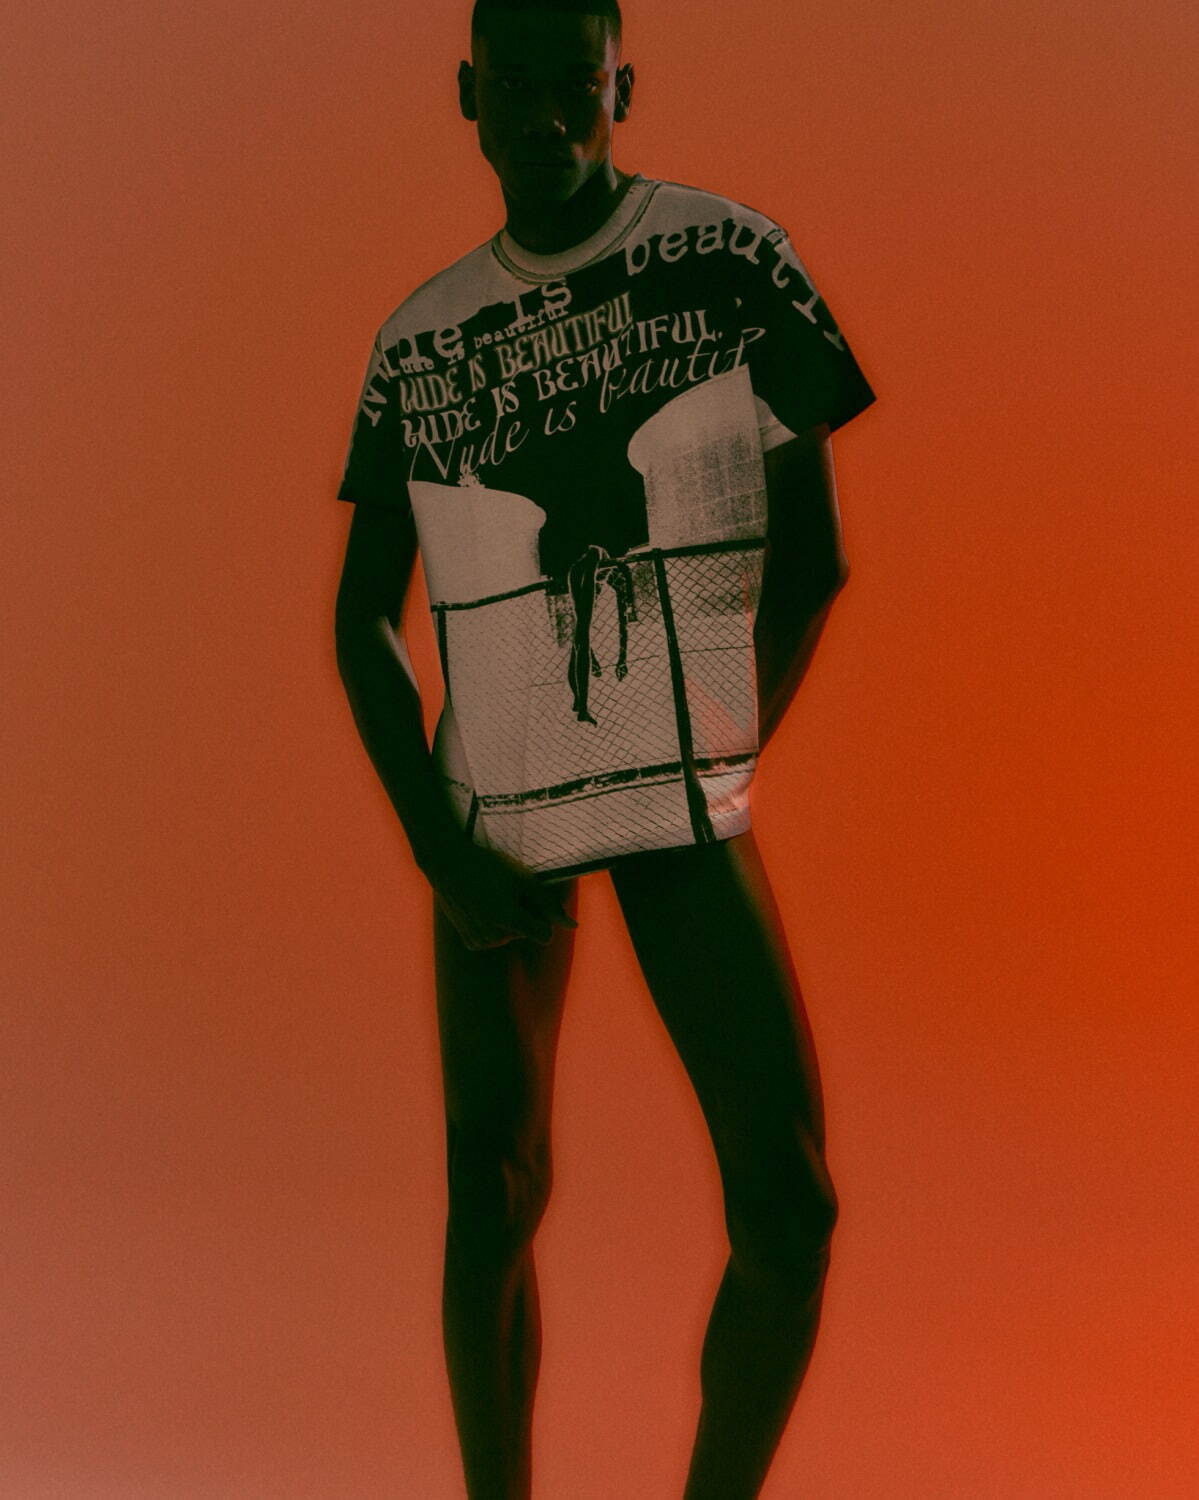 篠山紀信の写真がアパレルに、シュープコラボ新作ユニセックスTシャツ 